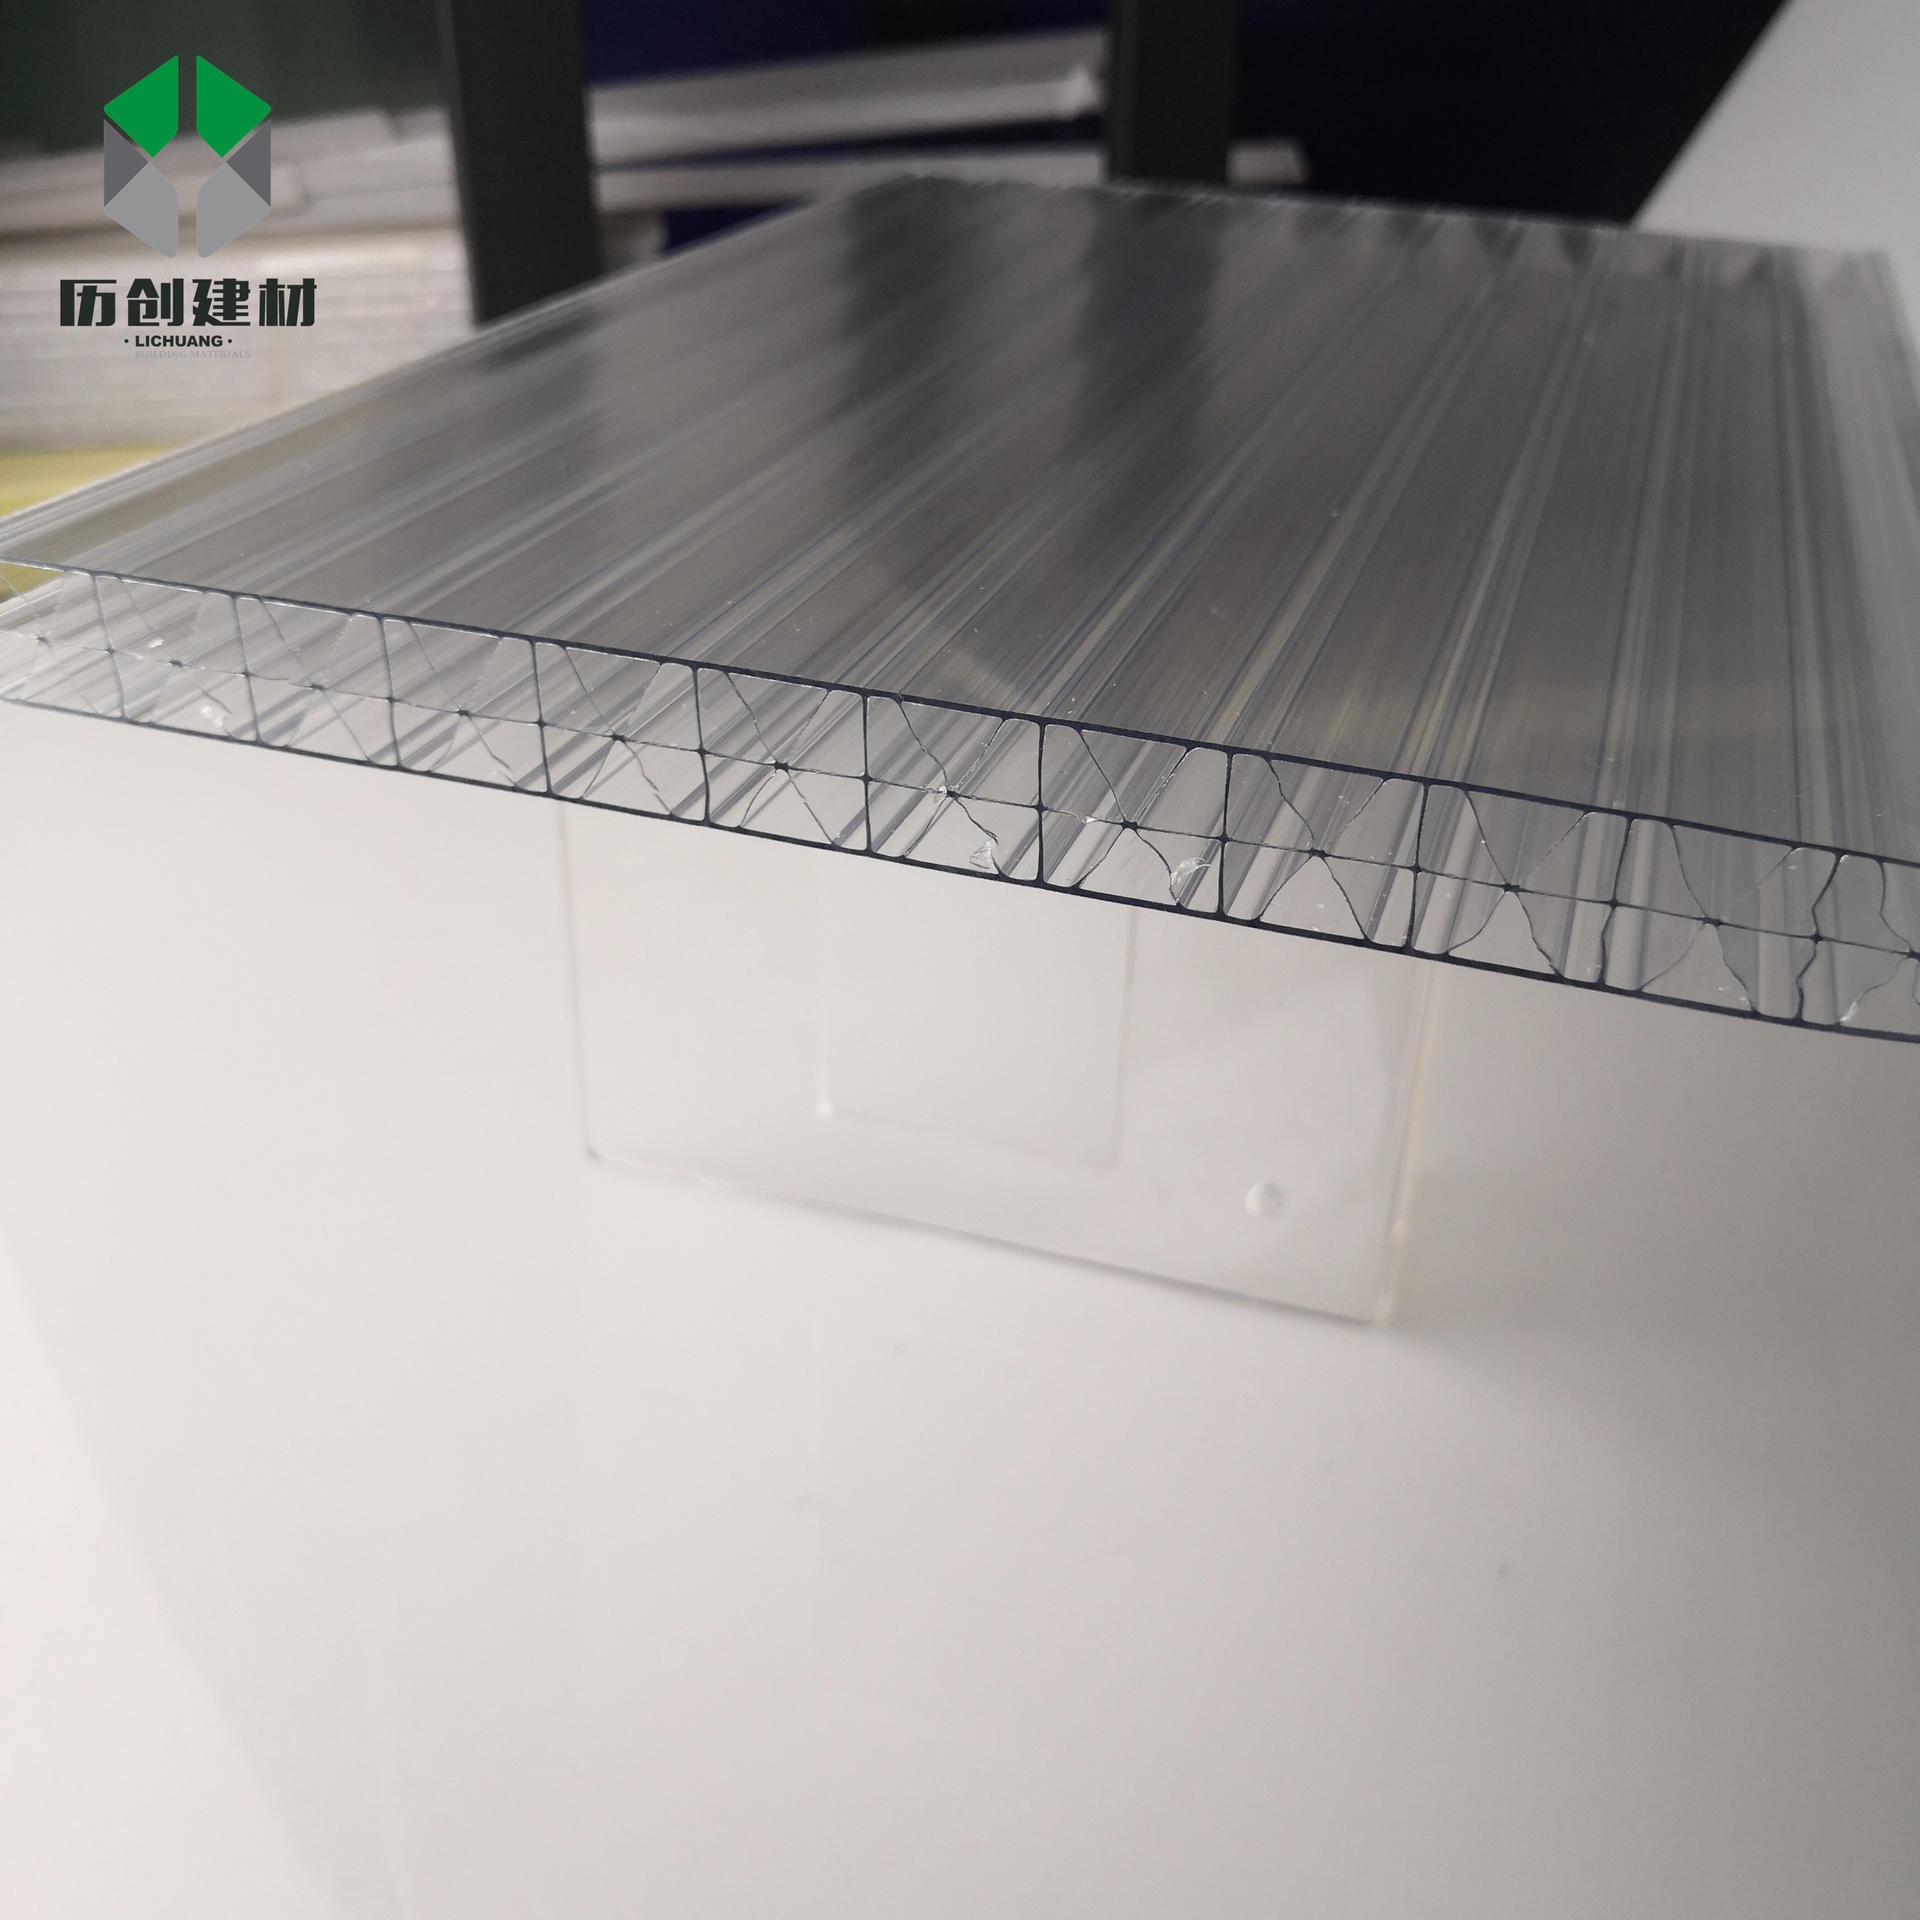 pc板材 广东历创厂家批发供应10mm透明草绿两层阳光板米字格pc板材顶棚车棚过道雨棚PC板